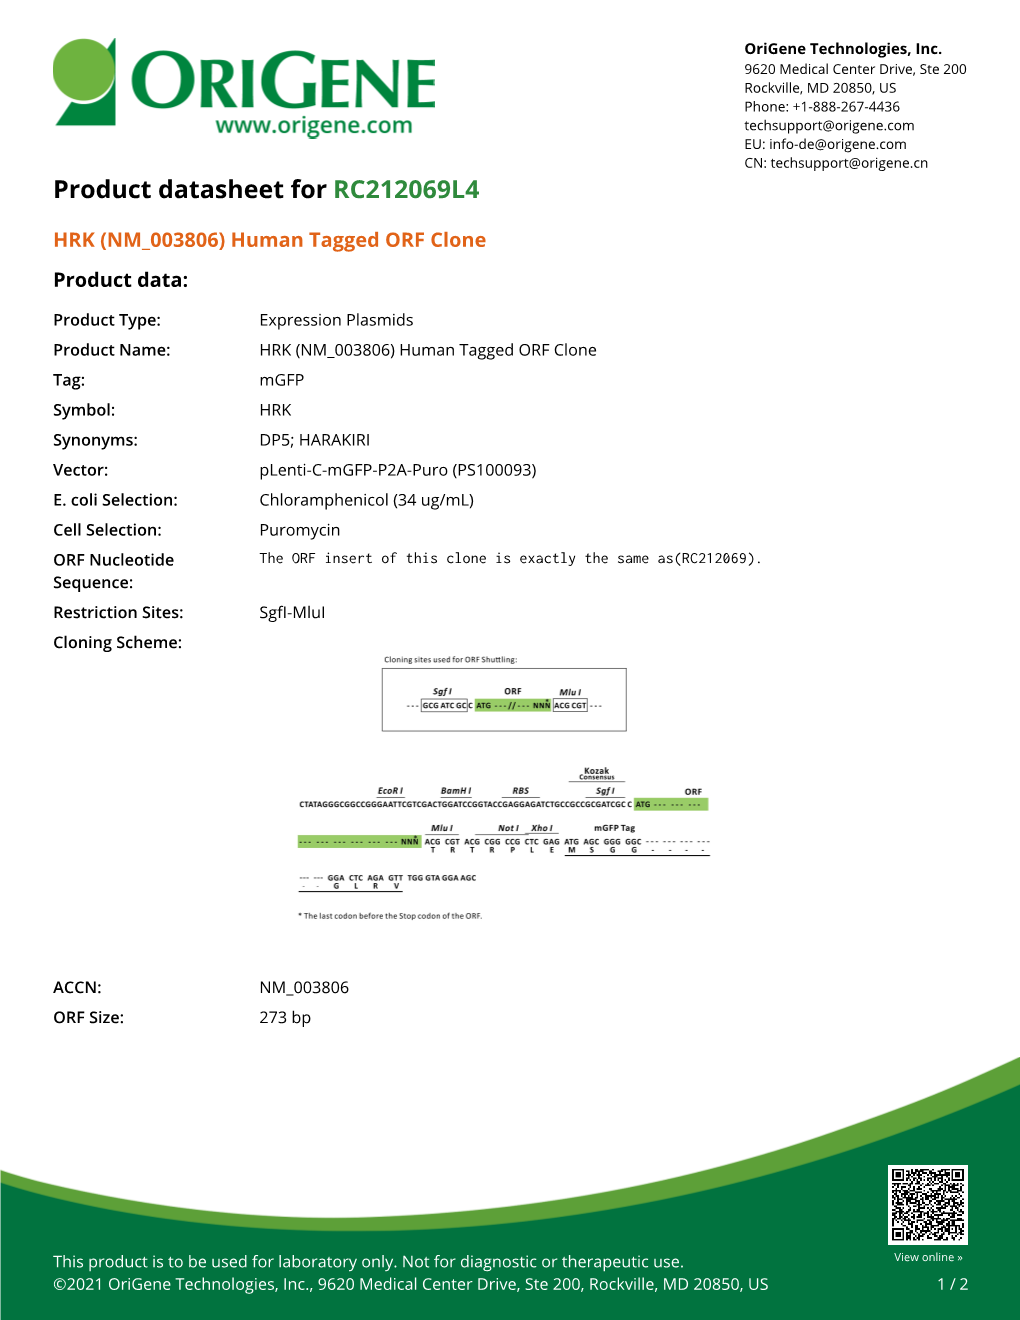 HRK (NM 003806) Human Tagged ORF Clone – RC212069L4 | Origene